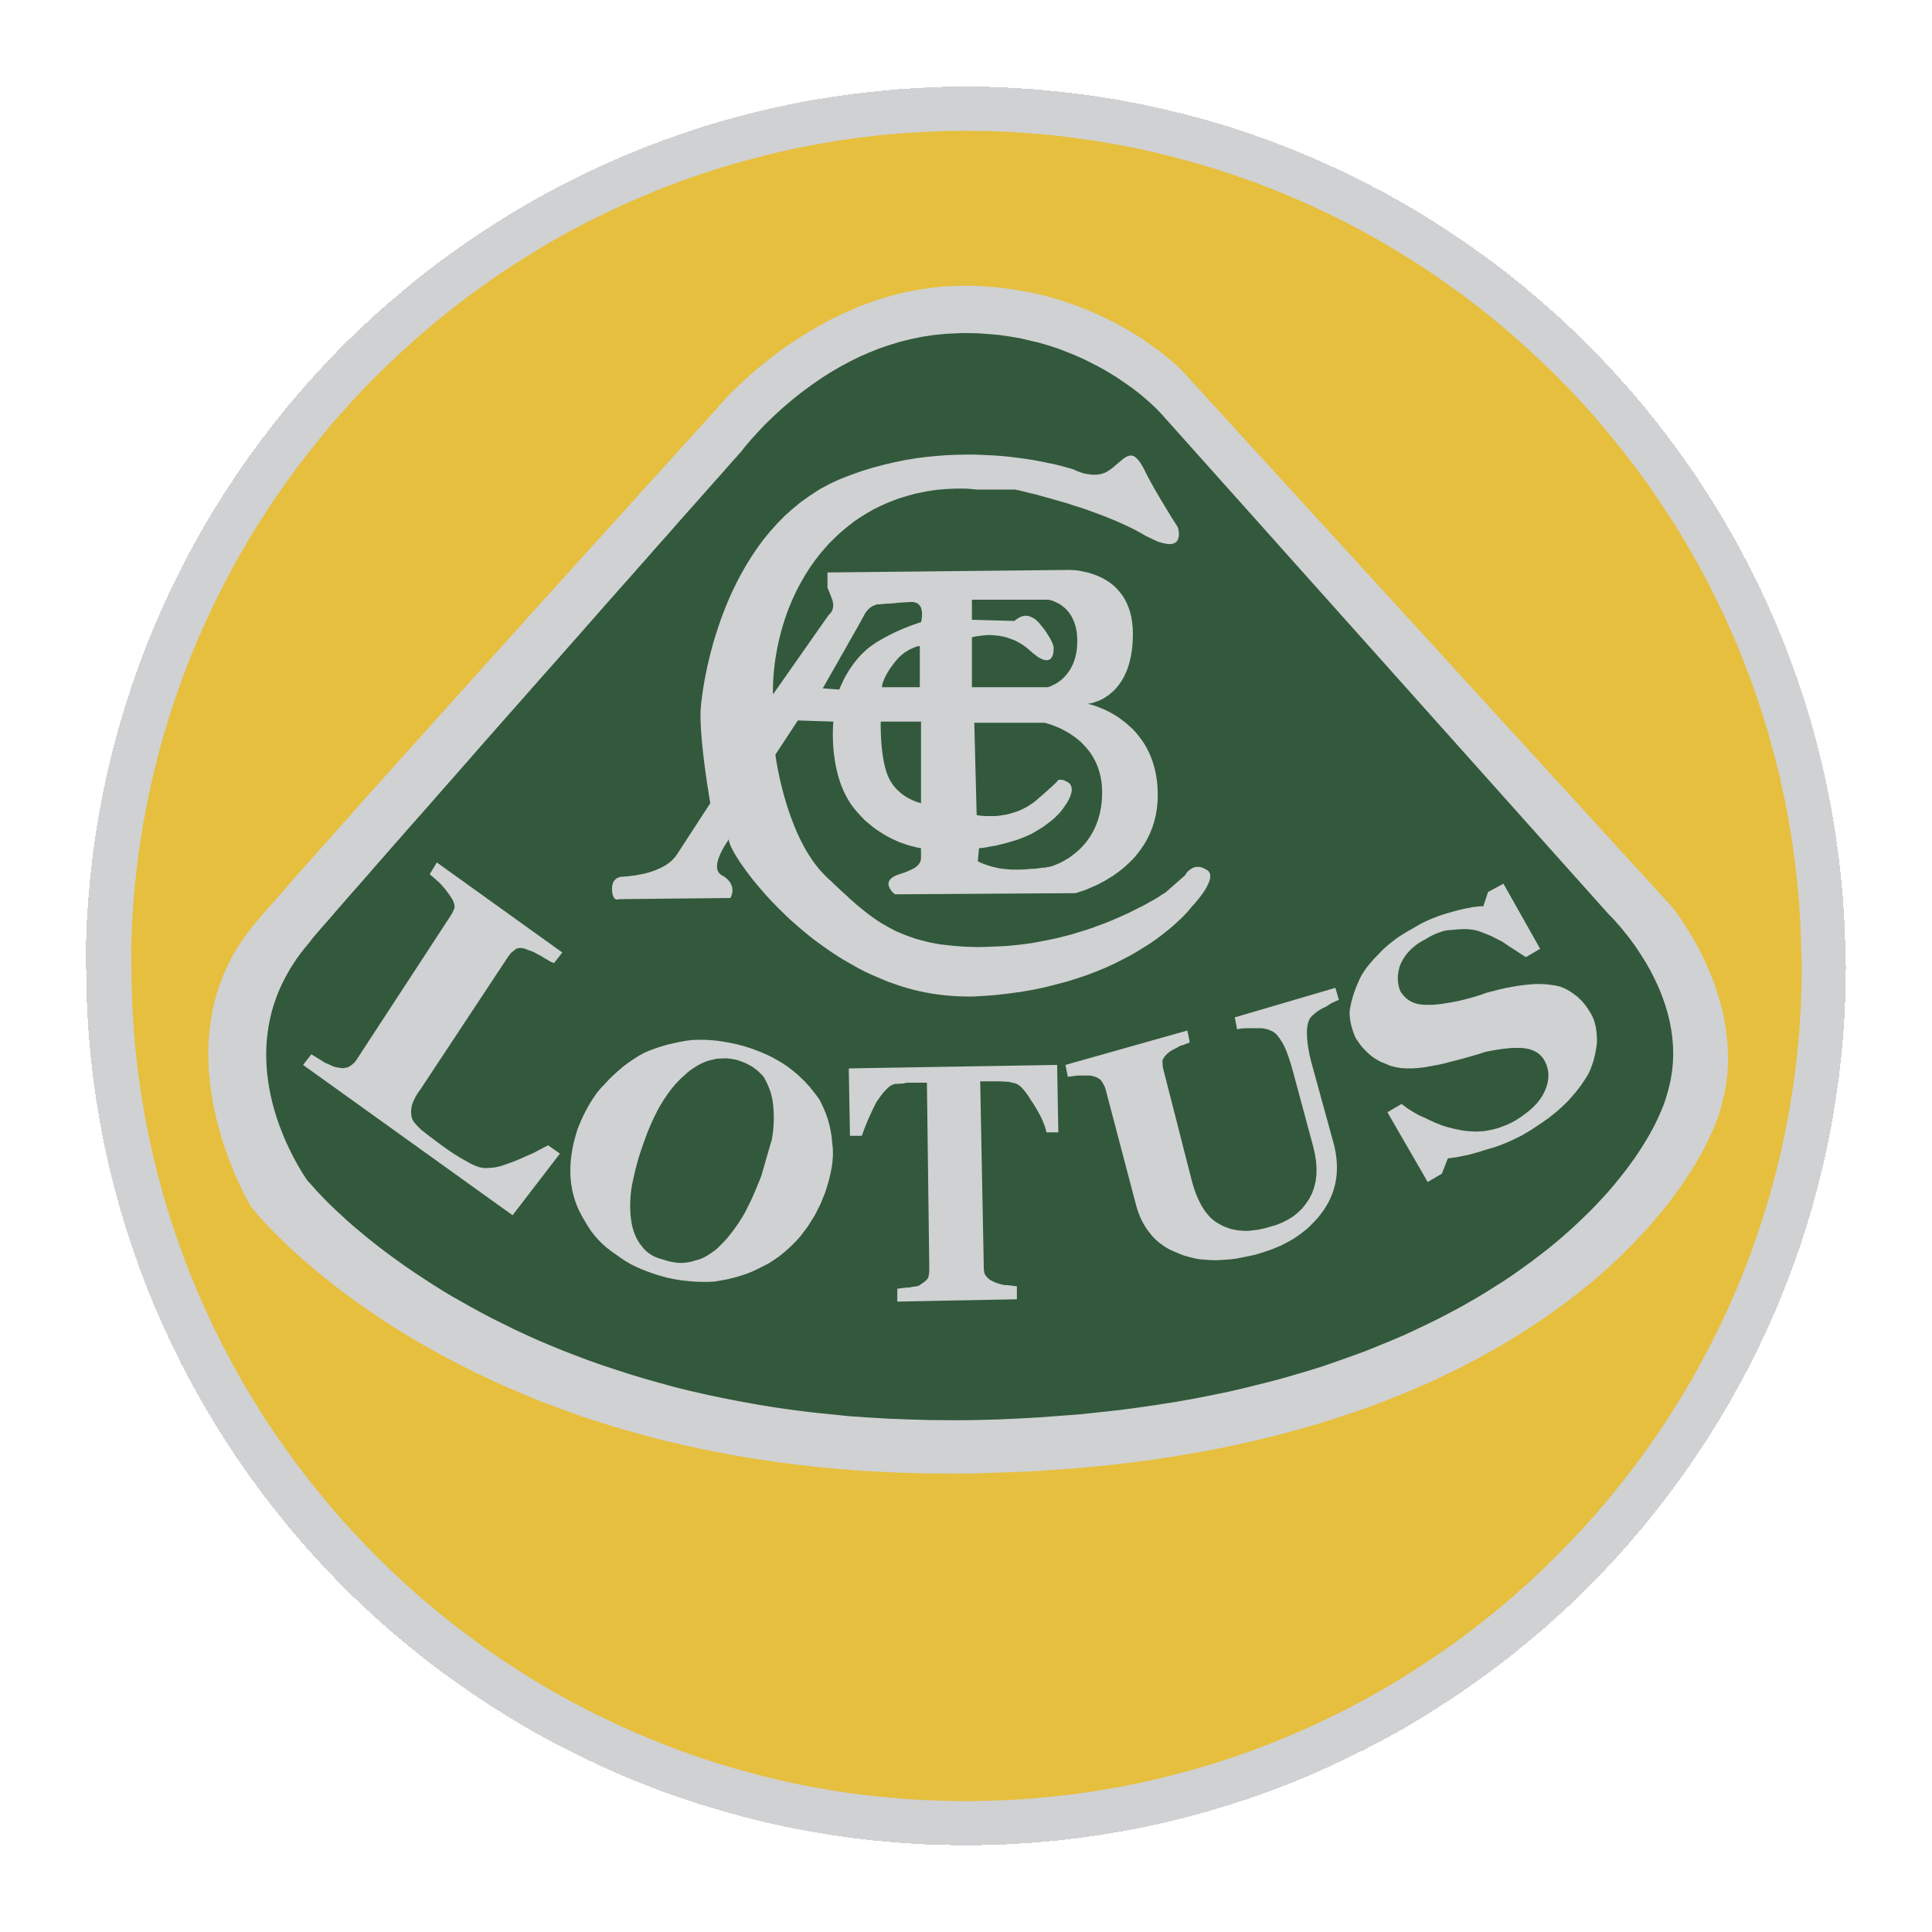 Lotus car logo PNG